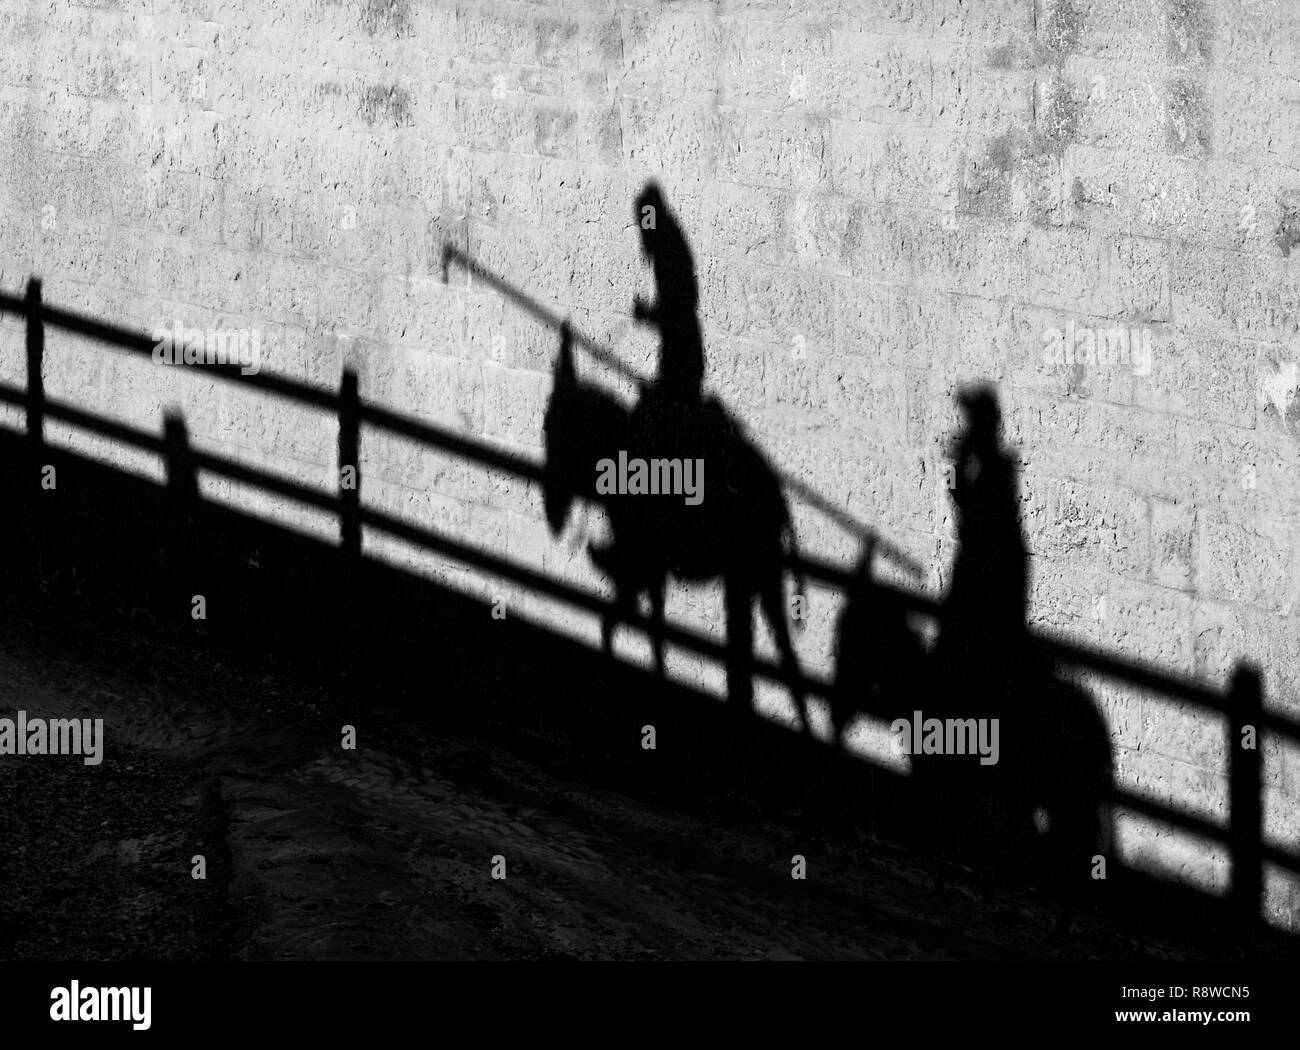 Silhouette di persone a cavallo gli asini in Petra, Giordania. Foto in bianco e nero.Silhouette di persone su un cavallo.sagome di uomini e cavalli Foto Stock